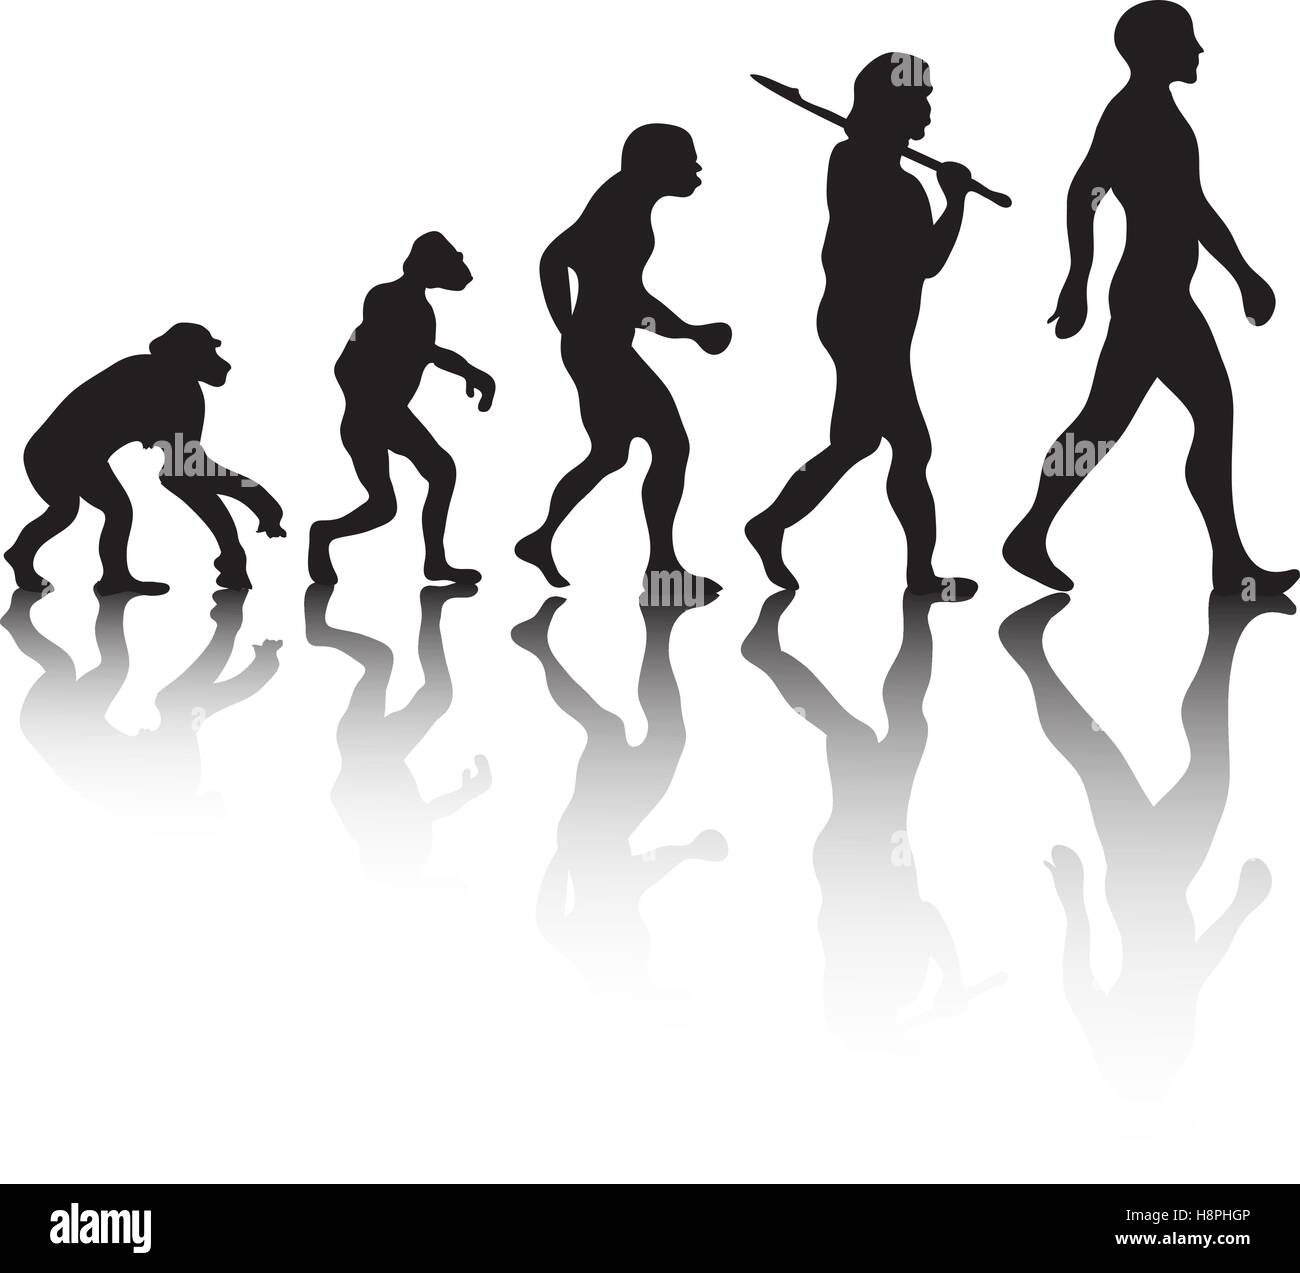 La evolución, la silueta de personas. La teoría de Darwin. Ilustración vectorial Ilustración del Vector